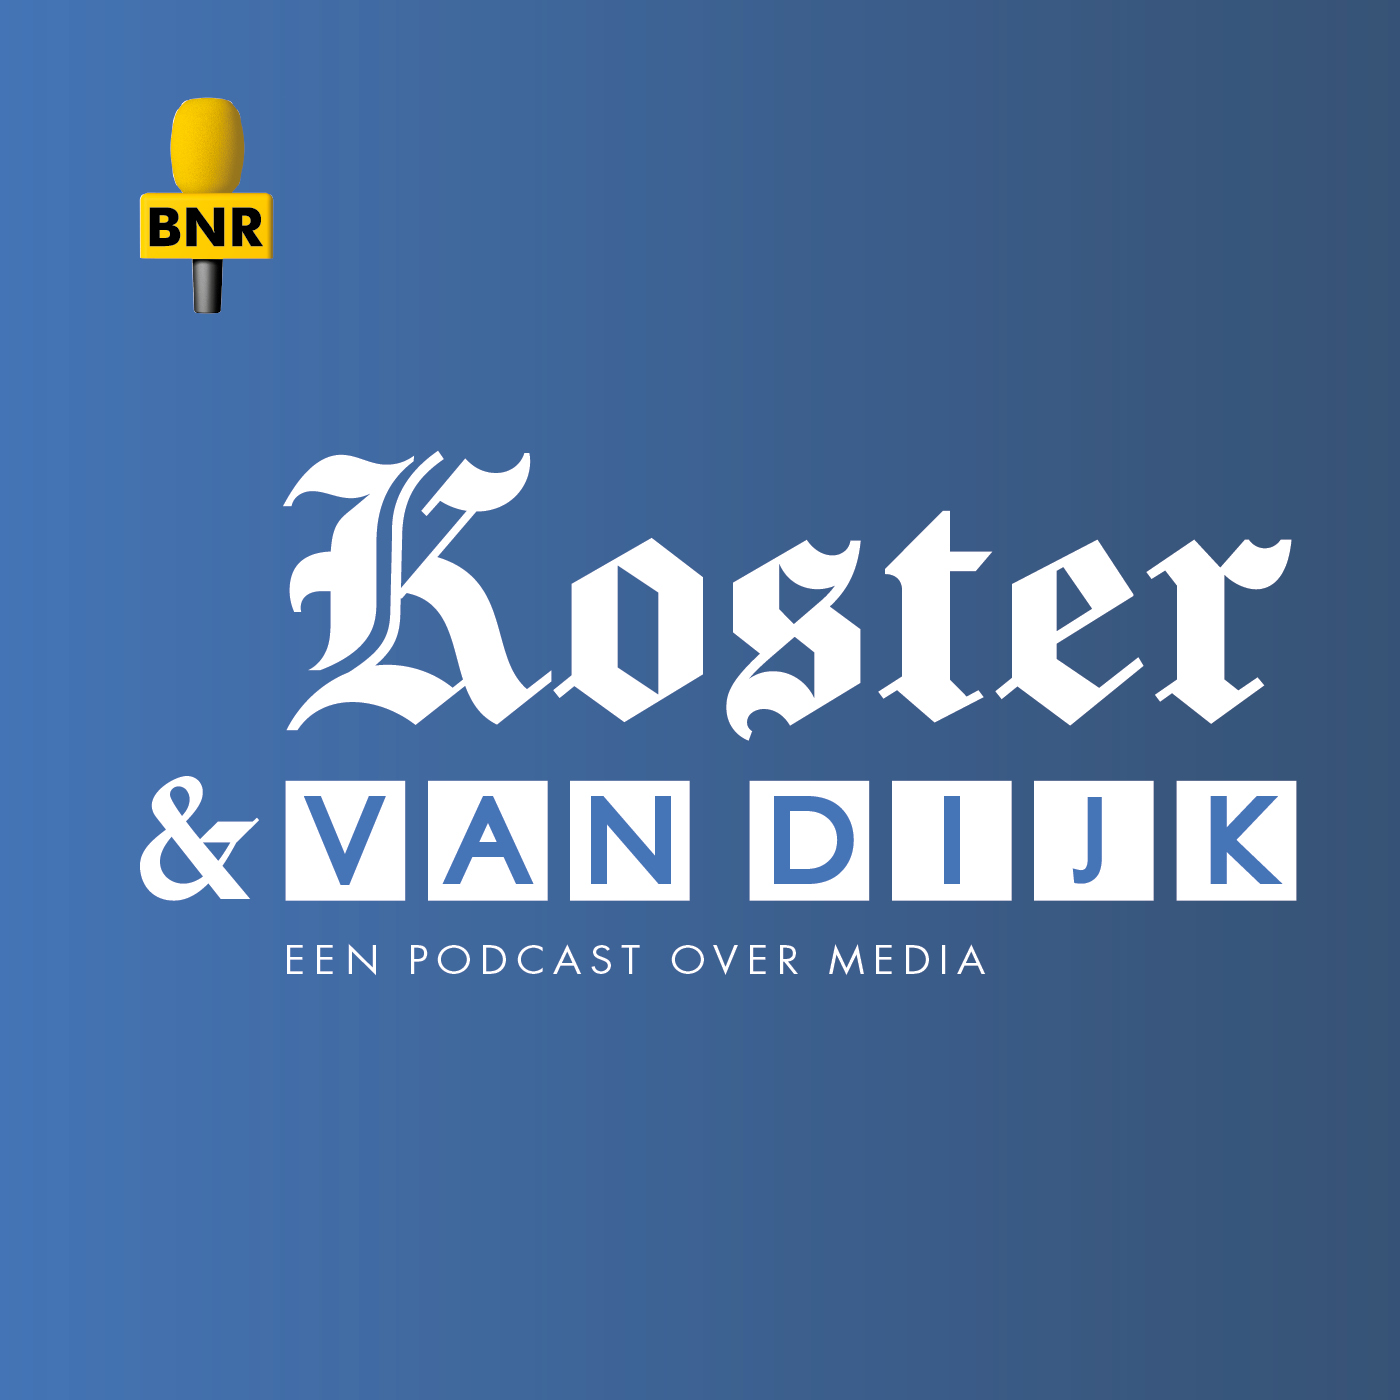 Koster & Van Dijk: NPO kraakt ex-voorzitter vanwege klokkenluidersaffaire